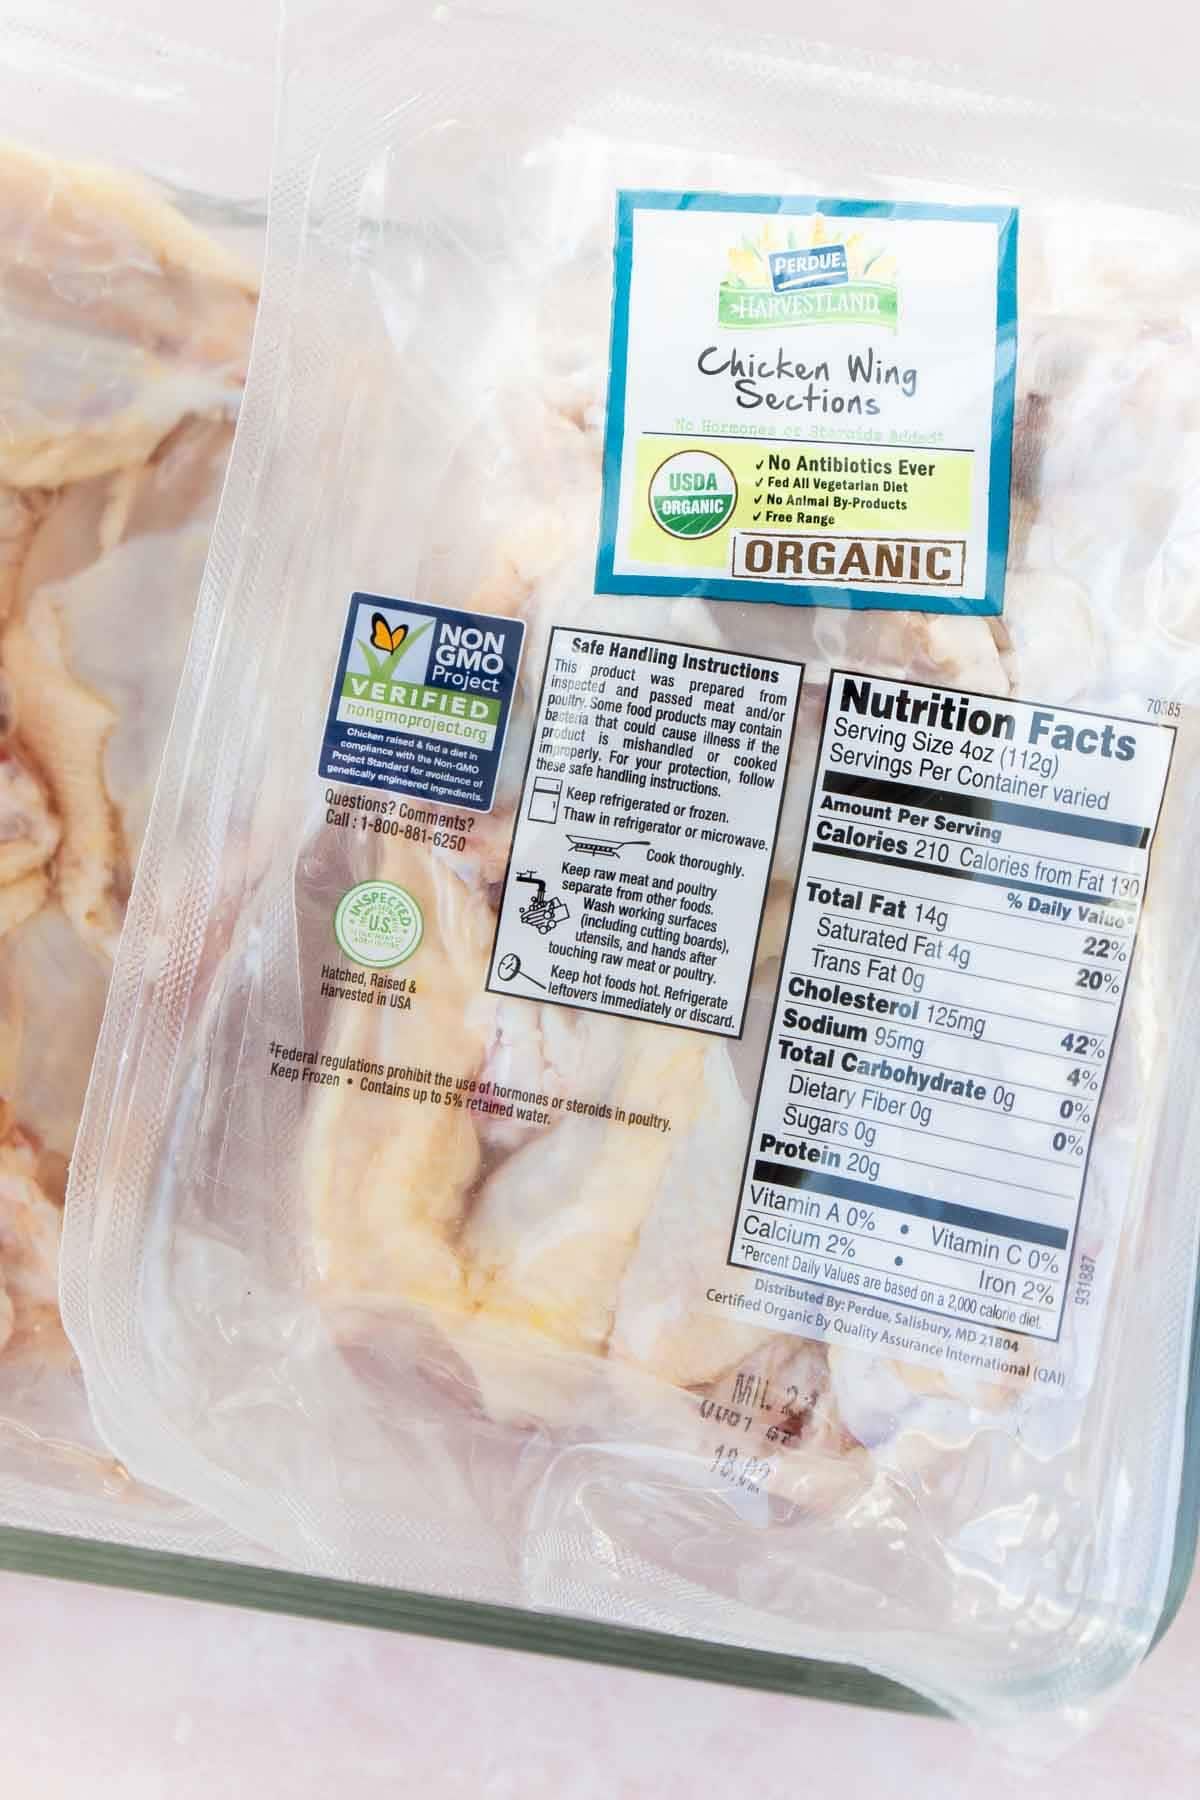 Um pacote de asas de frango orgânico Perdue Harvestland